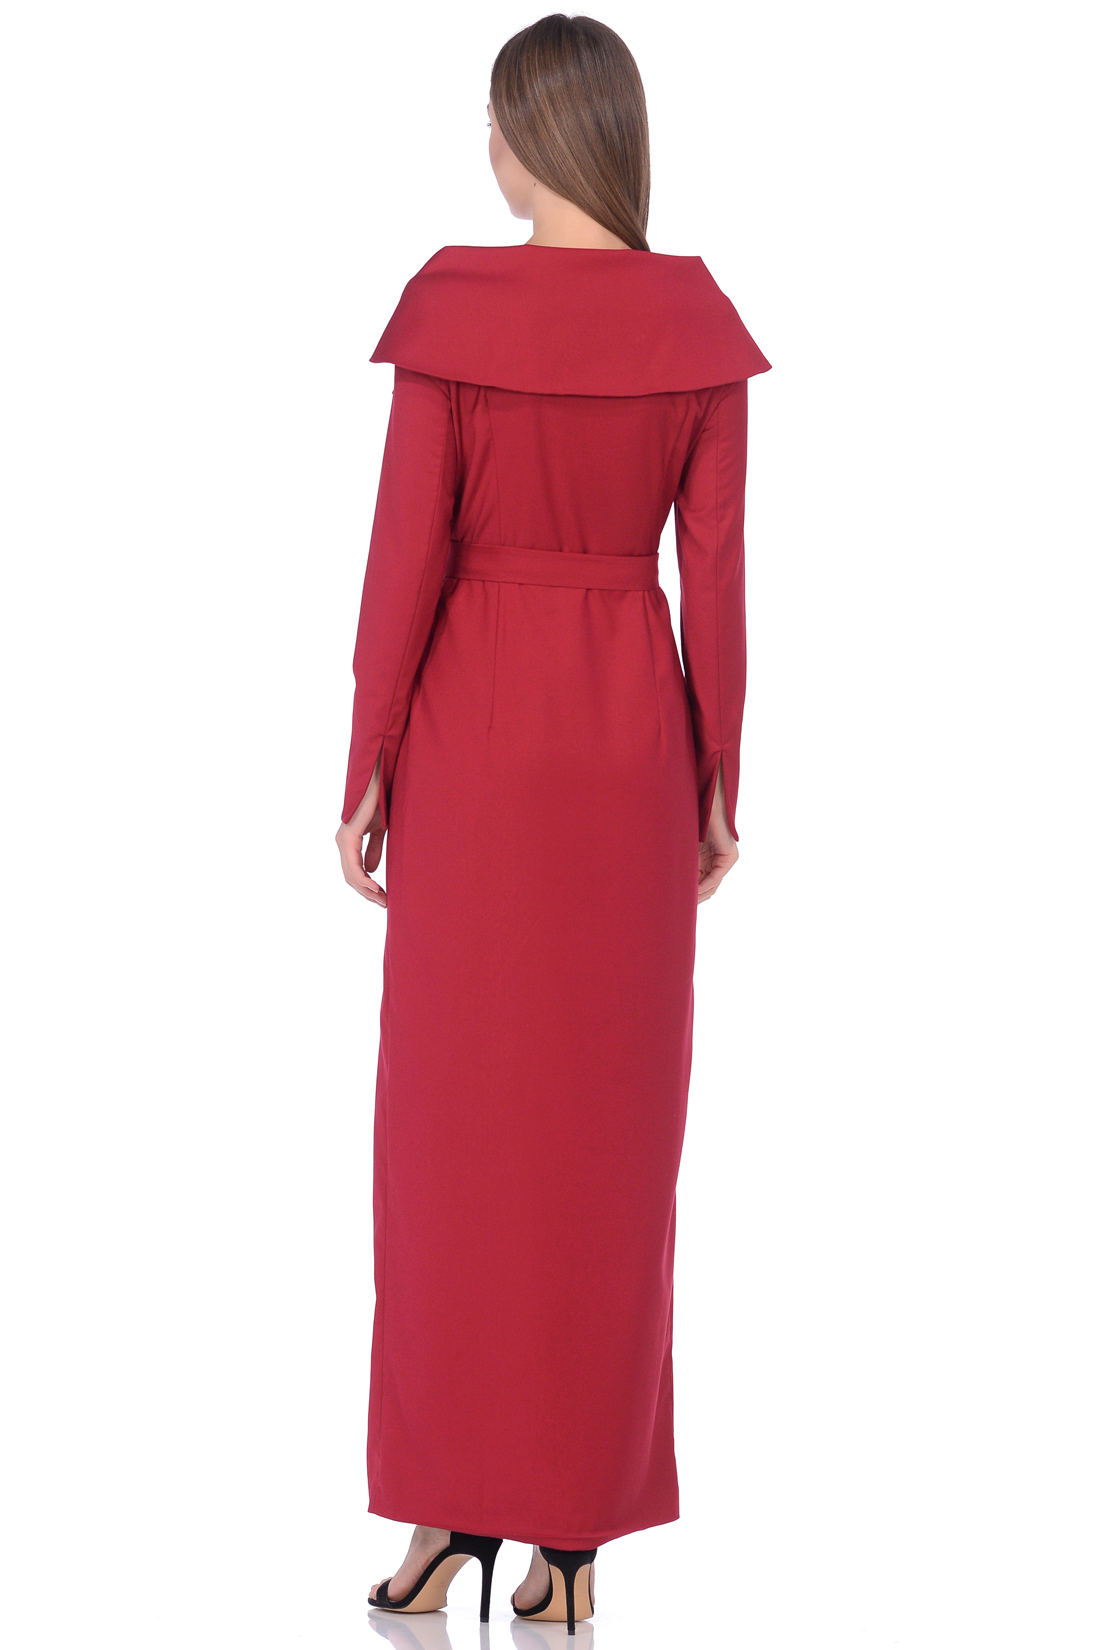 Длинное платье с разрезом (арт. baon B458574), размер M, цвет красный Длинное платье с разрезом (арт. baon B458574) - фото 2